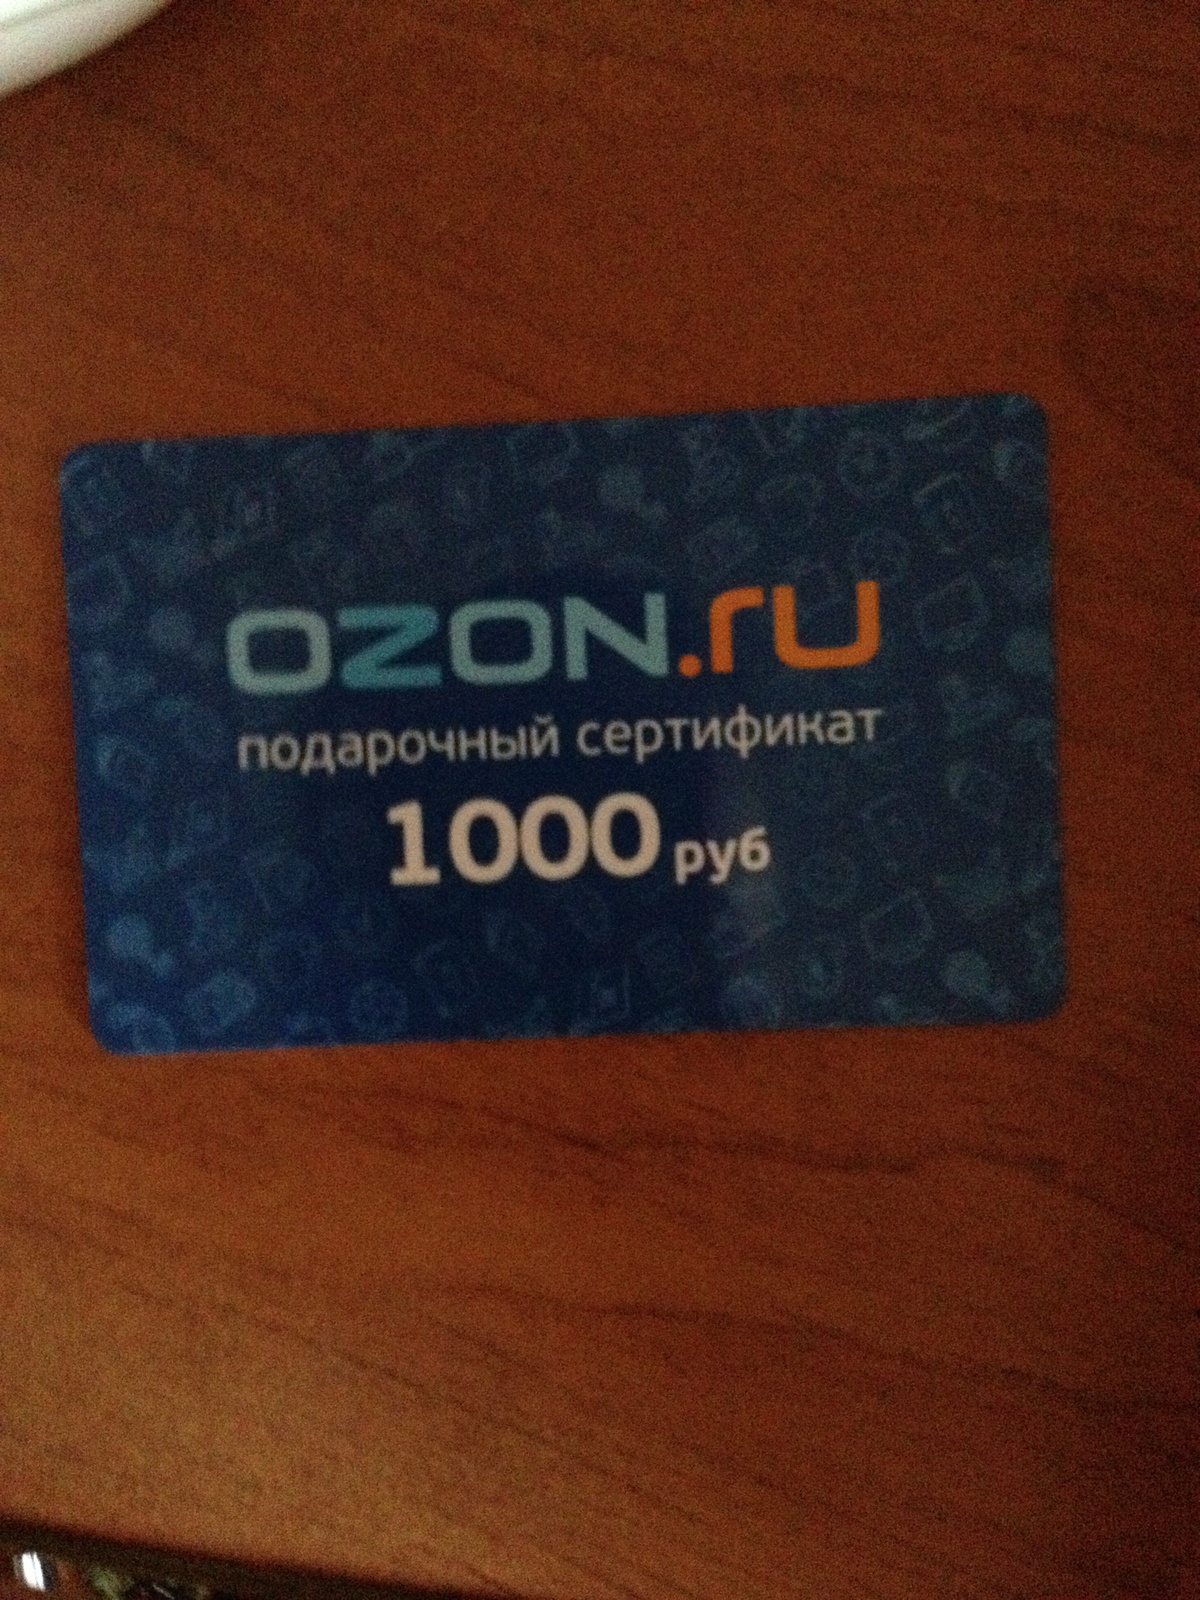 Как перевести с сертификата на озон карту. Сертификат OZON. Подарочный сертификат Озон. Сертификат OZON 1000. Подарочная карта Озон.